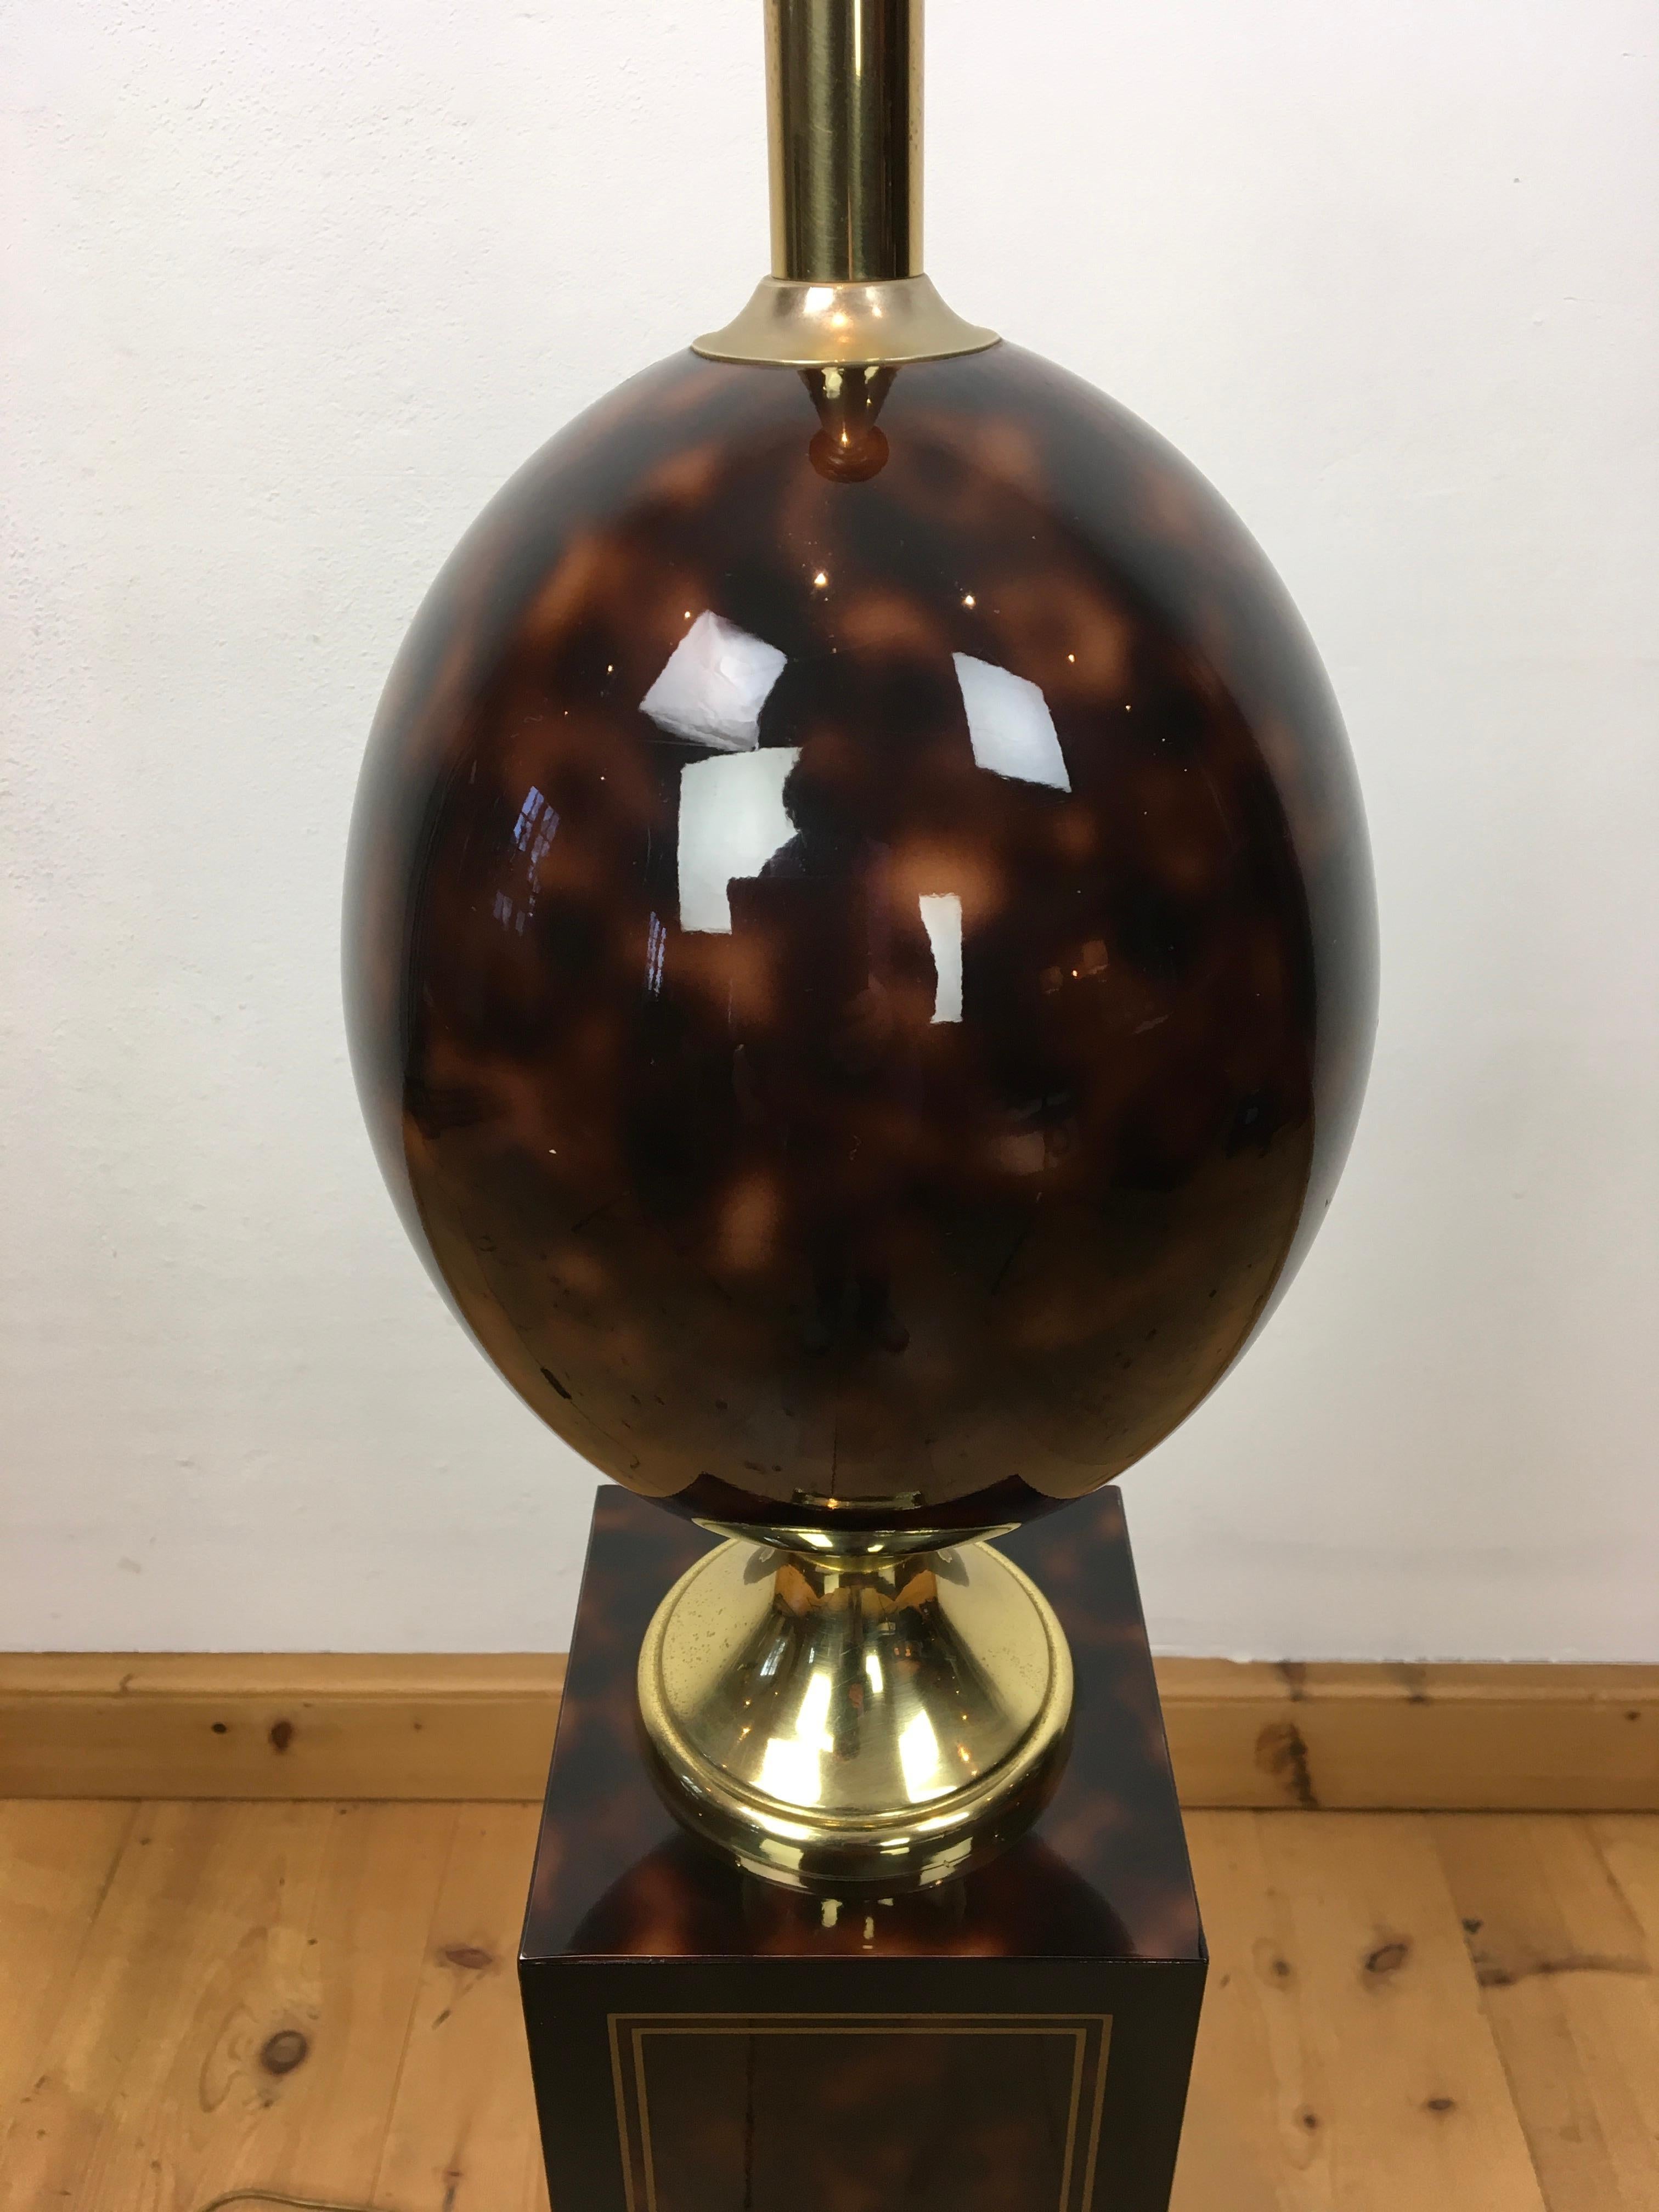 Lampadaire en forme d'œuf d'autruche par la Maison Le Dauphin France. 
Ce lampadaire Hollywood Regency est doté d'un design en forme d'écaille de tortue qui le rend si élégant. 
Lampadaire français de la période 1970 - 1980.
Base en bois laqué,